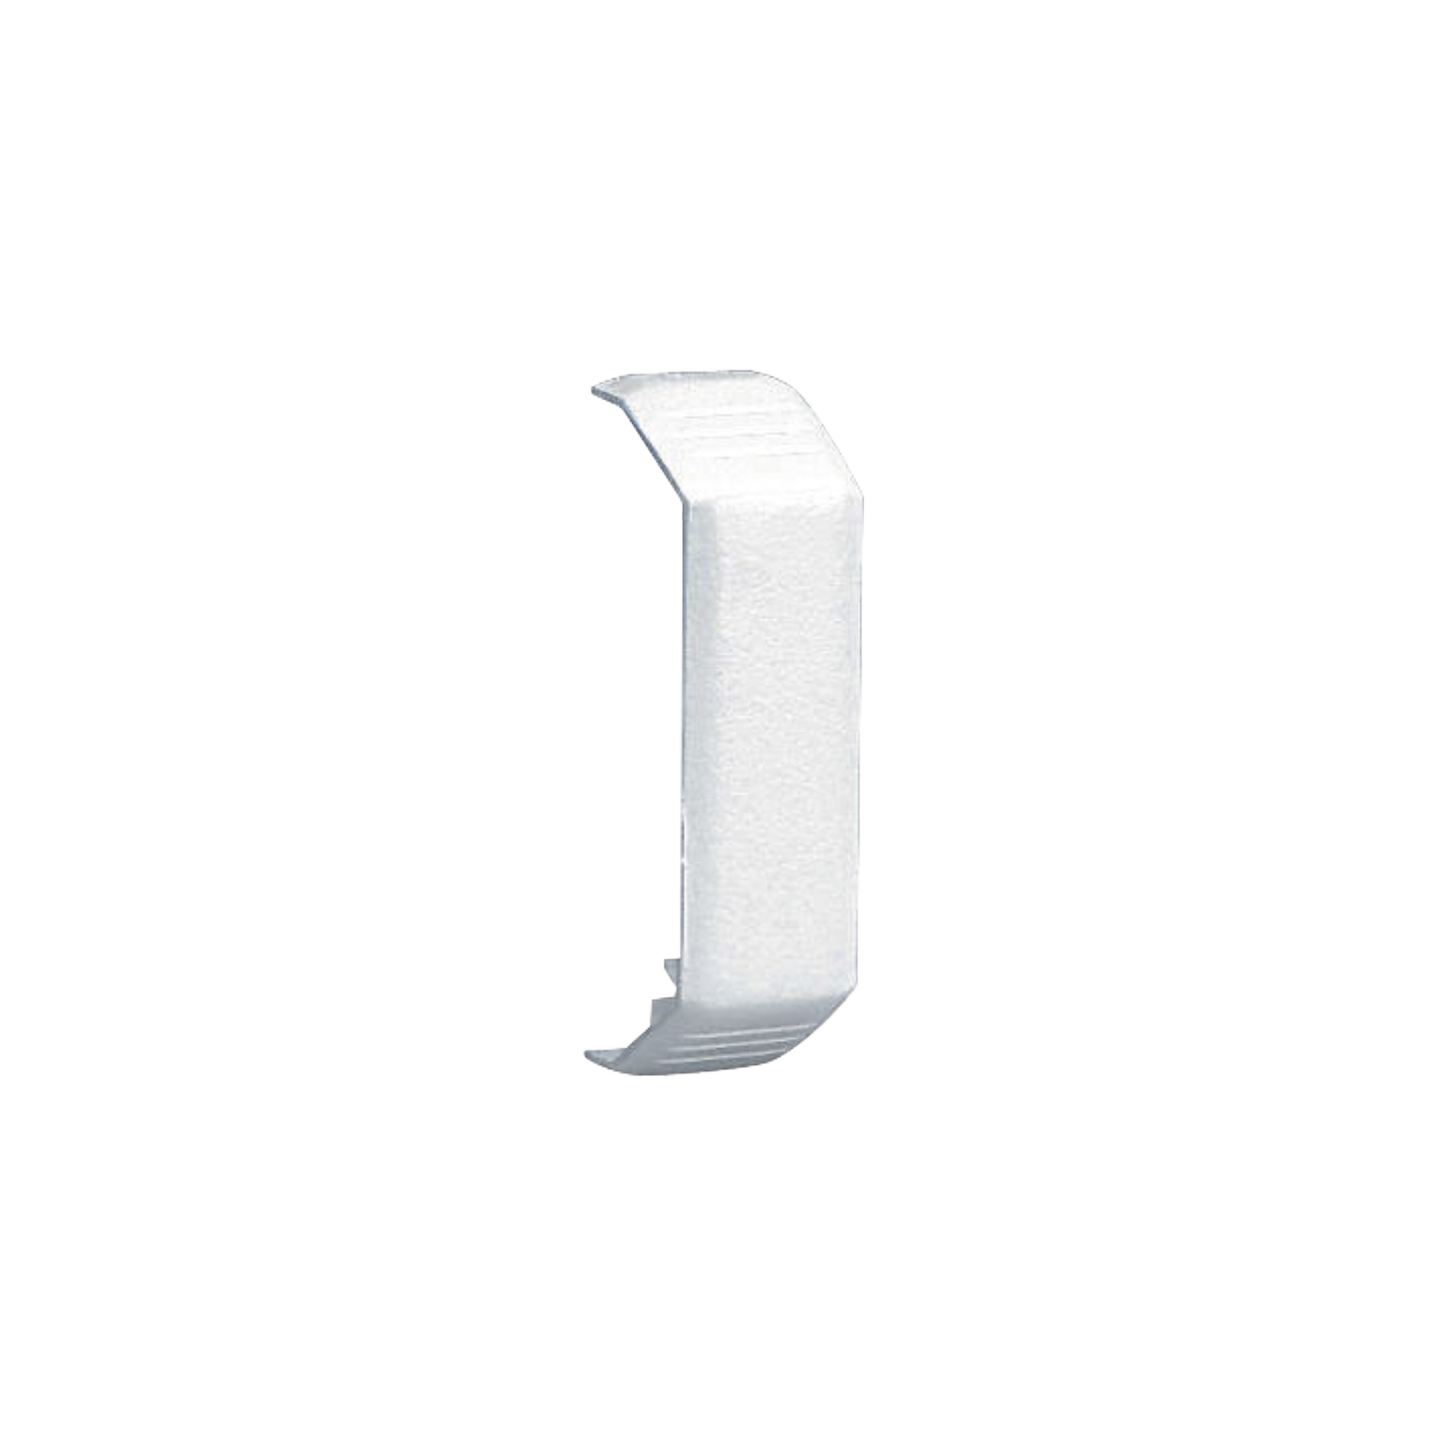 Unión recta de tapa, para uso con canaleta T45, Material PVC Rígido, Color Blanco Mate